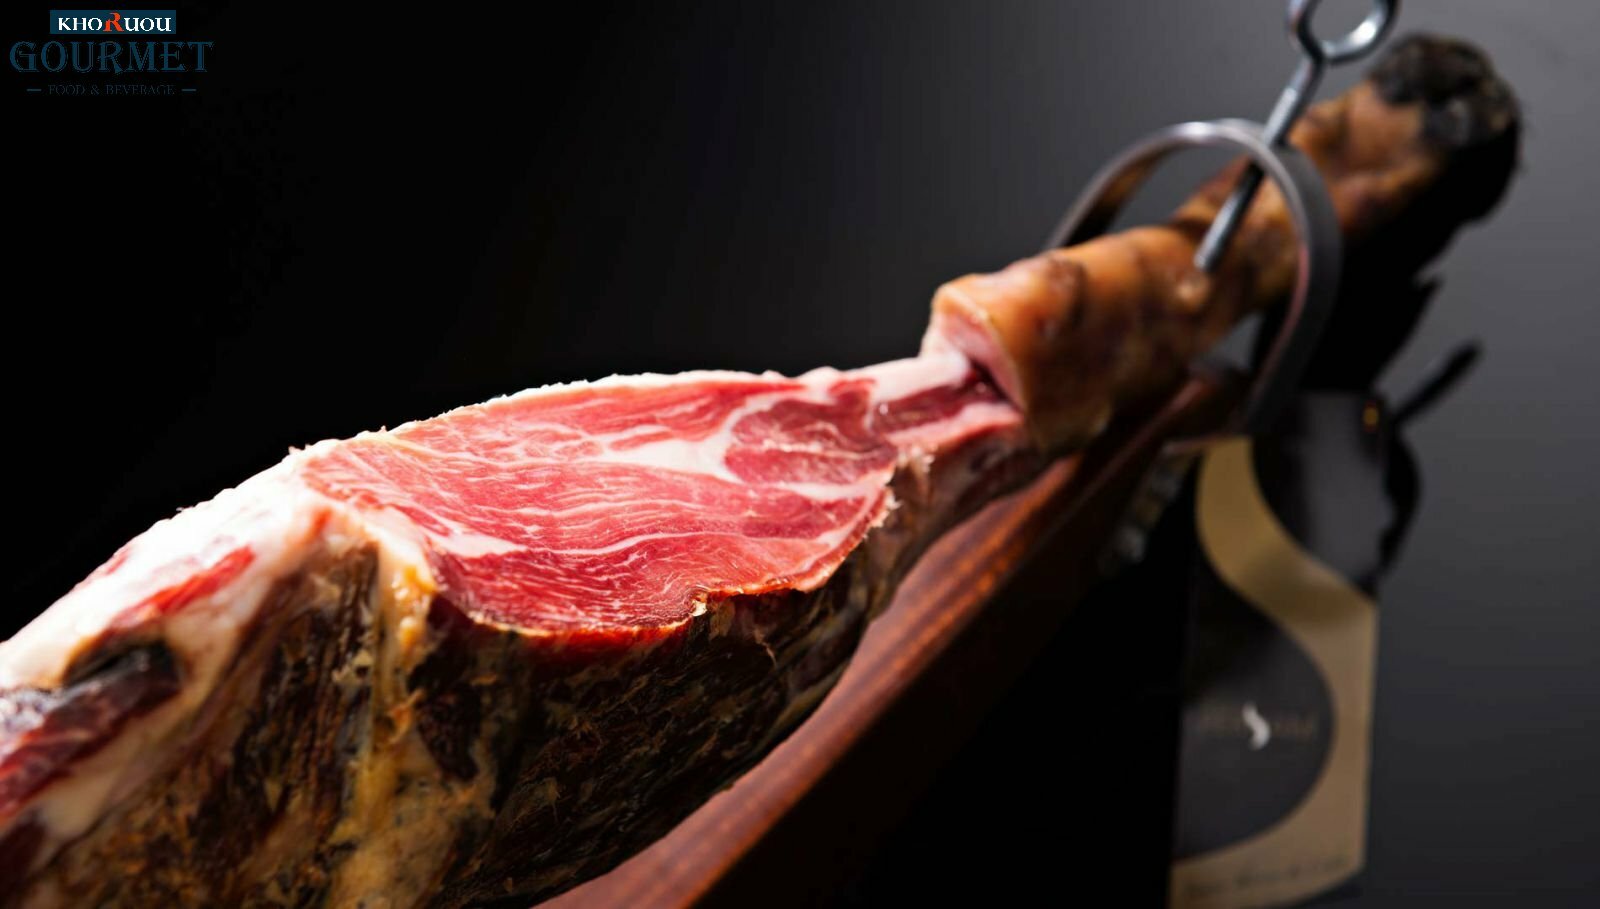 Thịt heo đen thượng hạng Iberico là một trong những món ăn có giá thành đắt đỏ. Dành riêng cho giới thượng lưu ở Tây Ban Nha